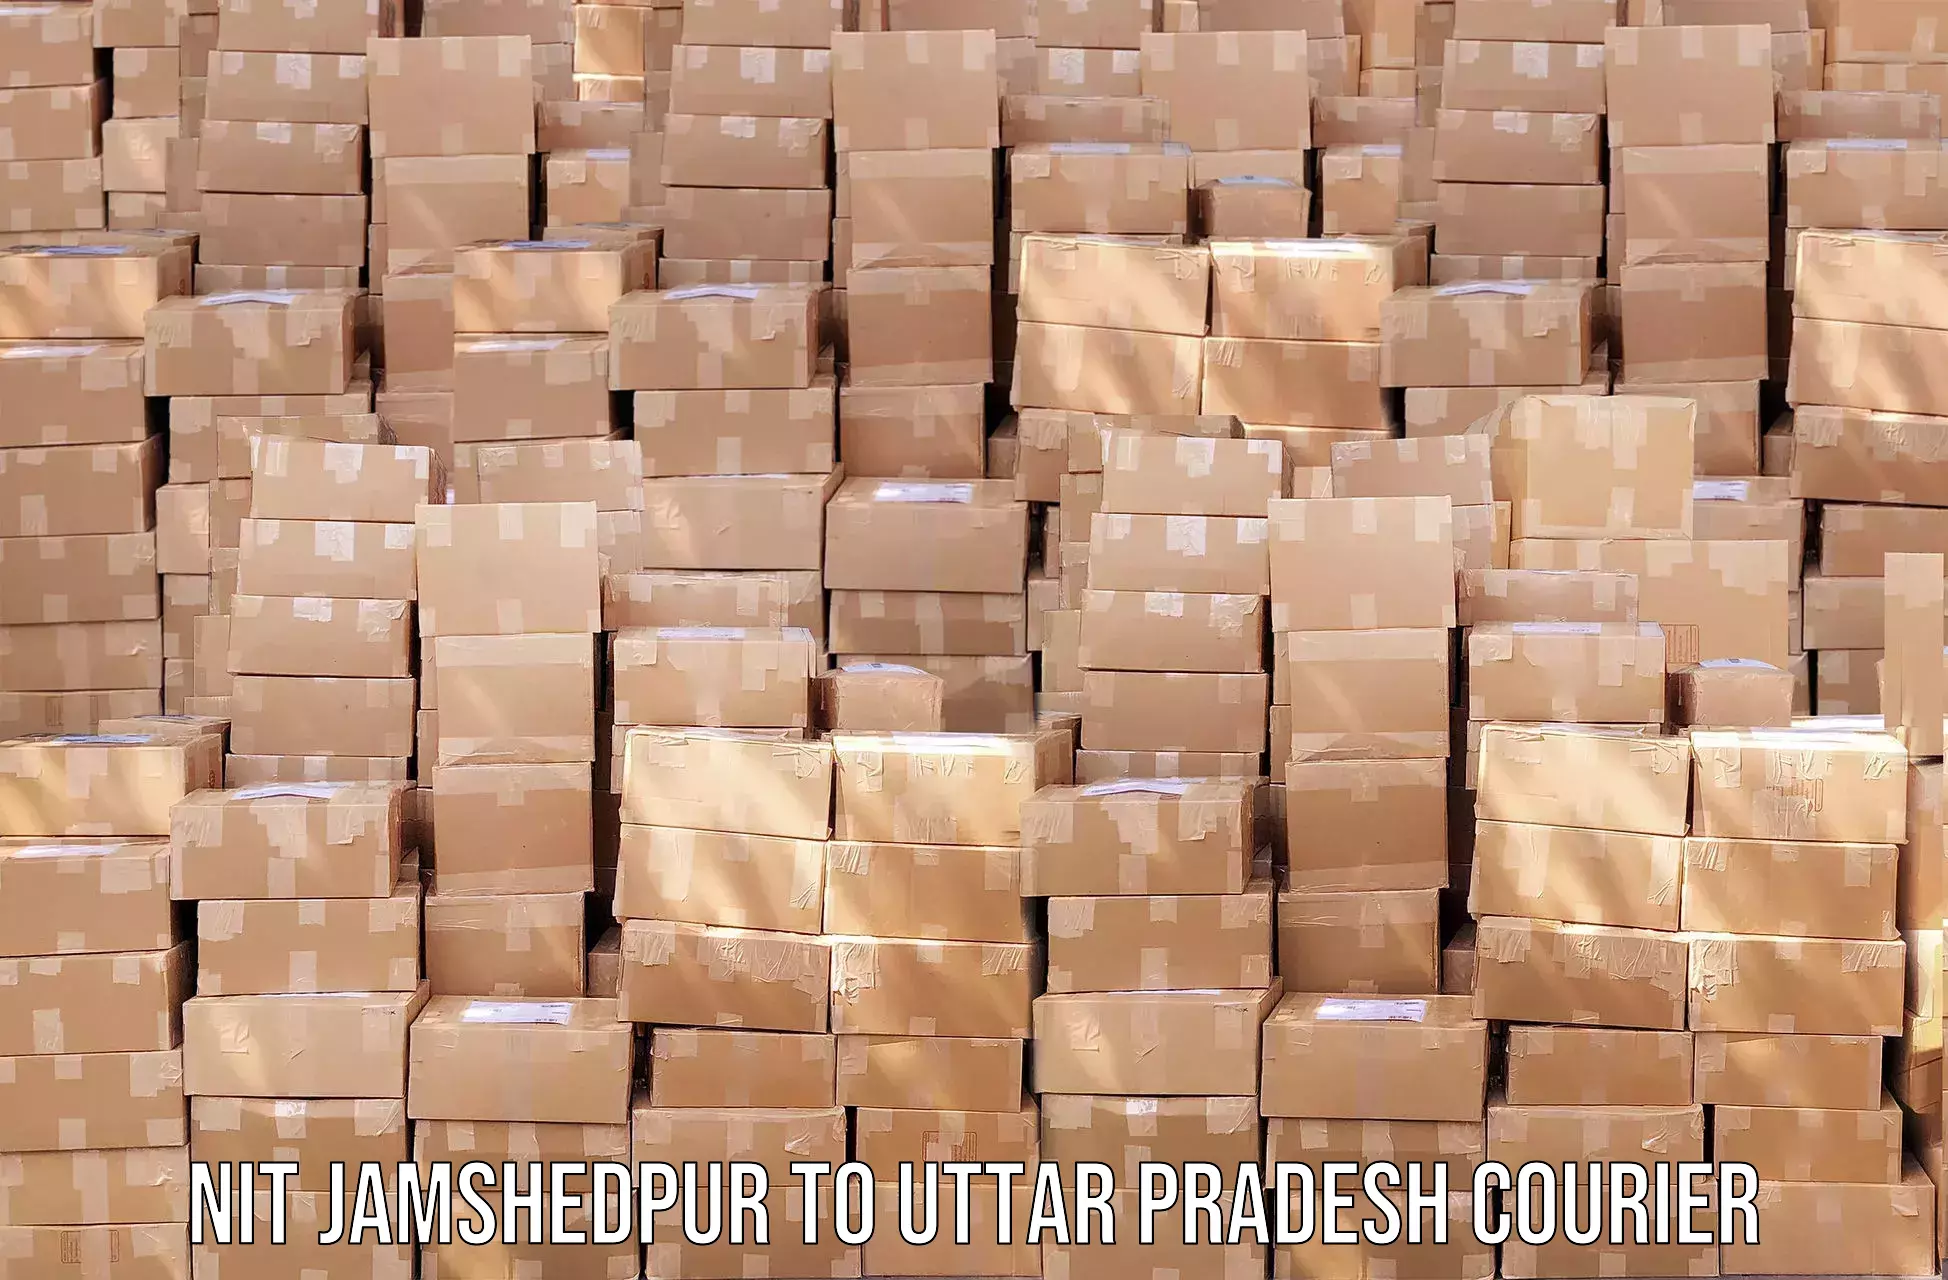 Courier service partnerships NIT Jamshedpur to Khalilabad